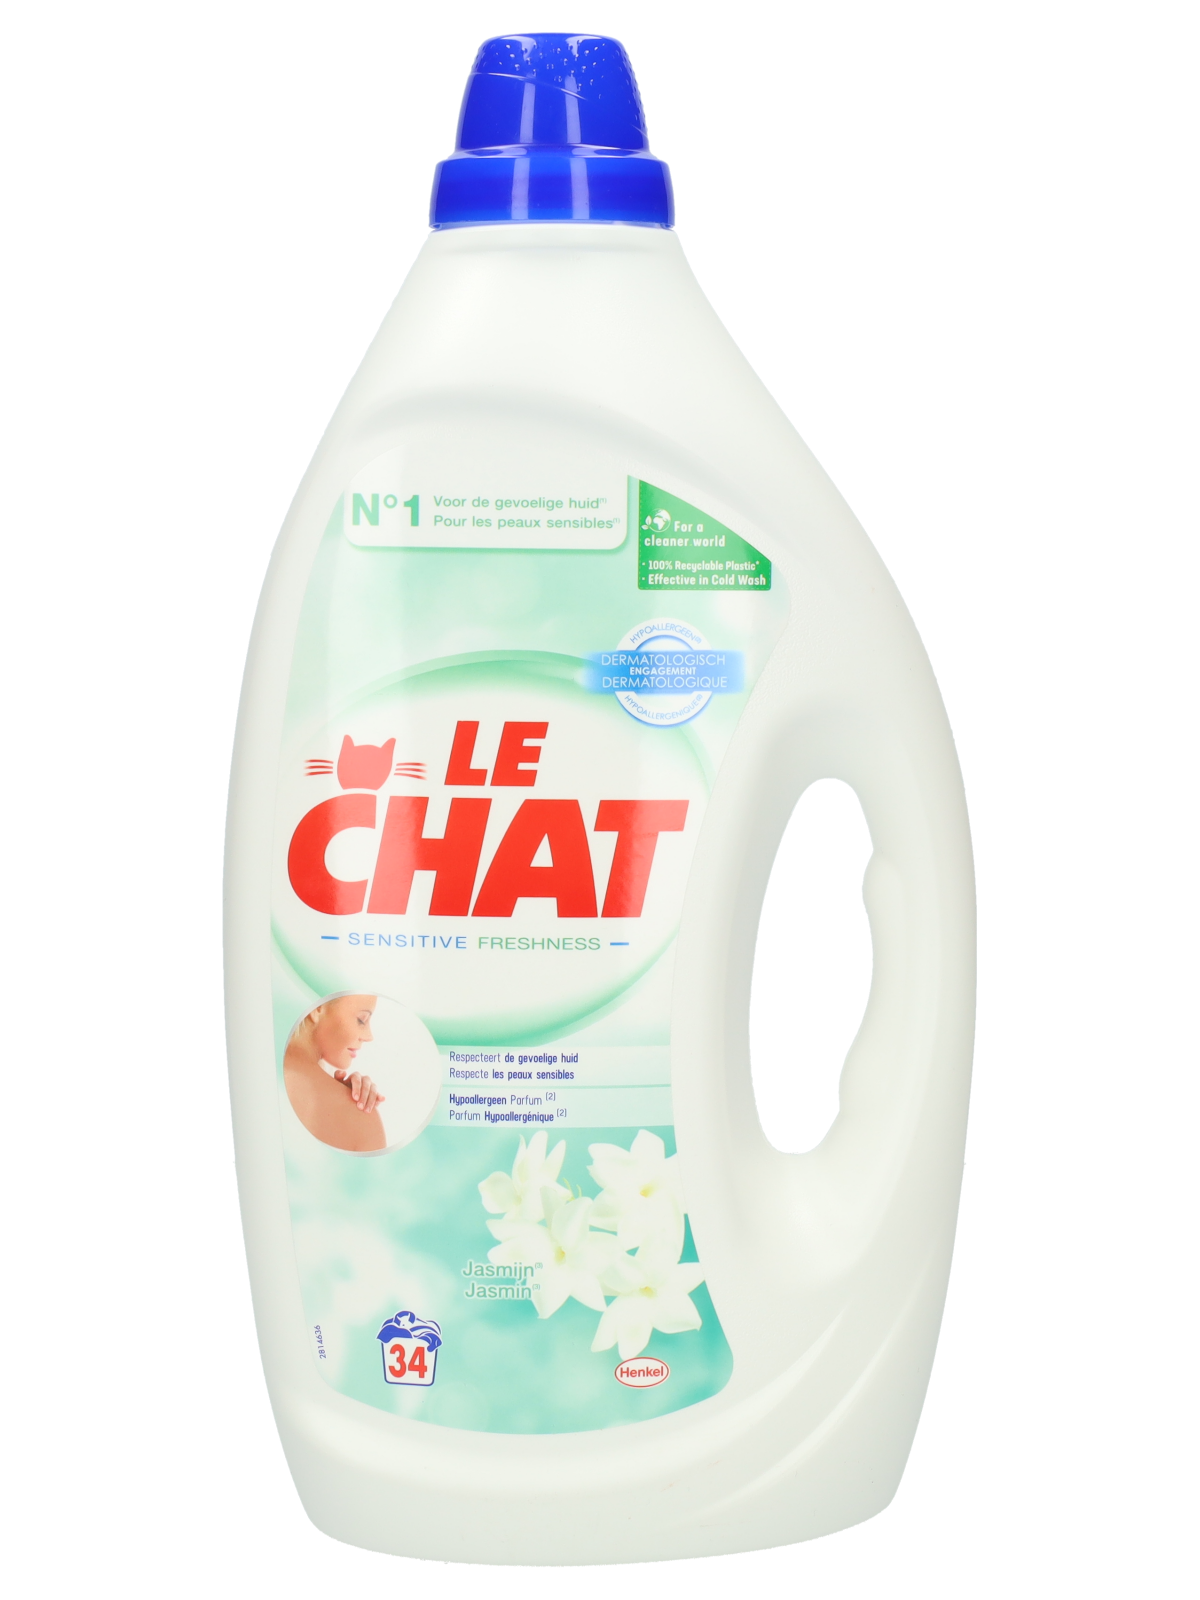 Le Chat Sensitive – 60 Lavages (3L) – Lessive Liquide